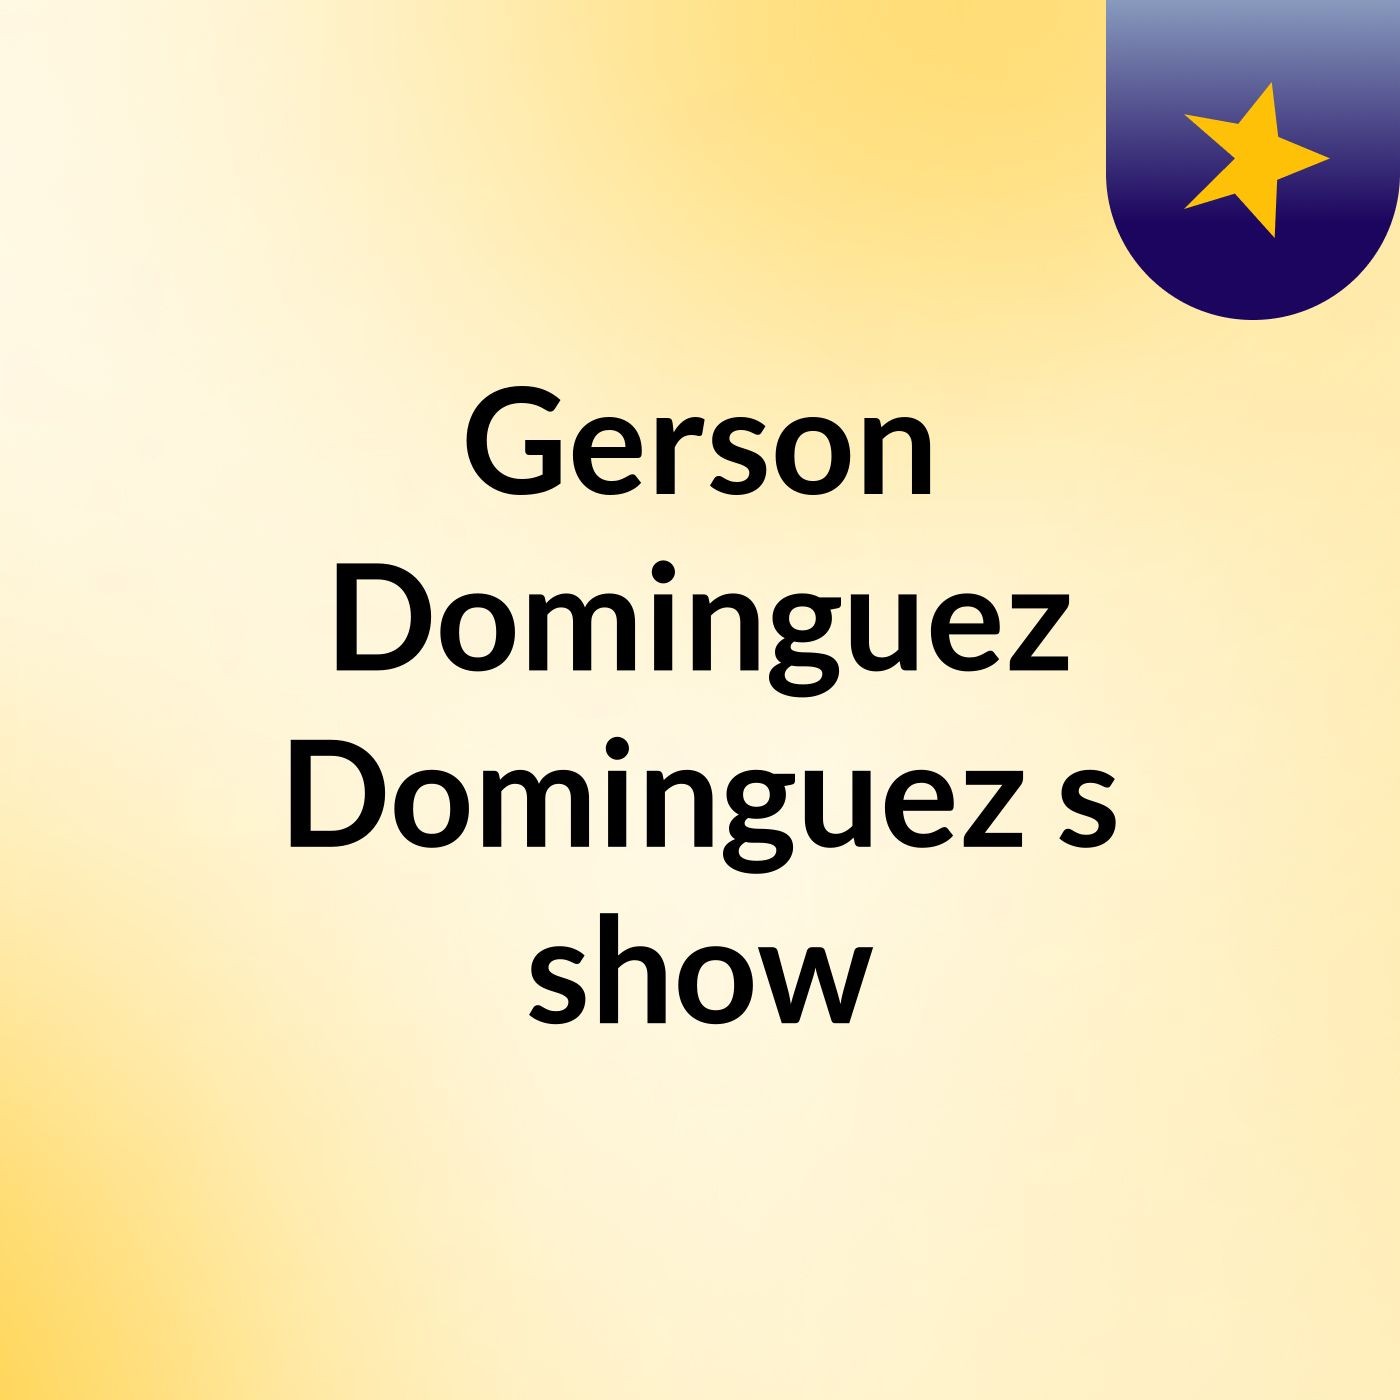 Gerson Dominguez Dominguez's show